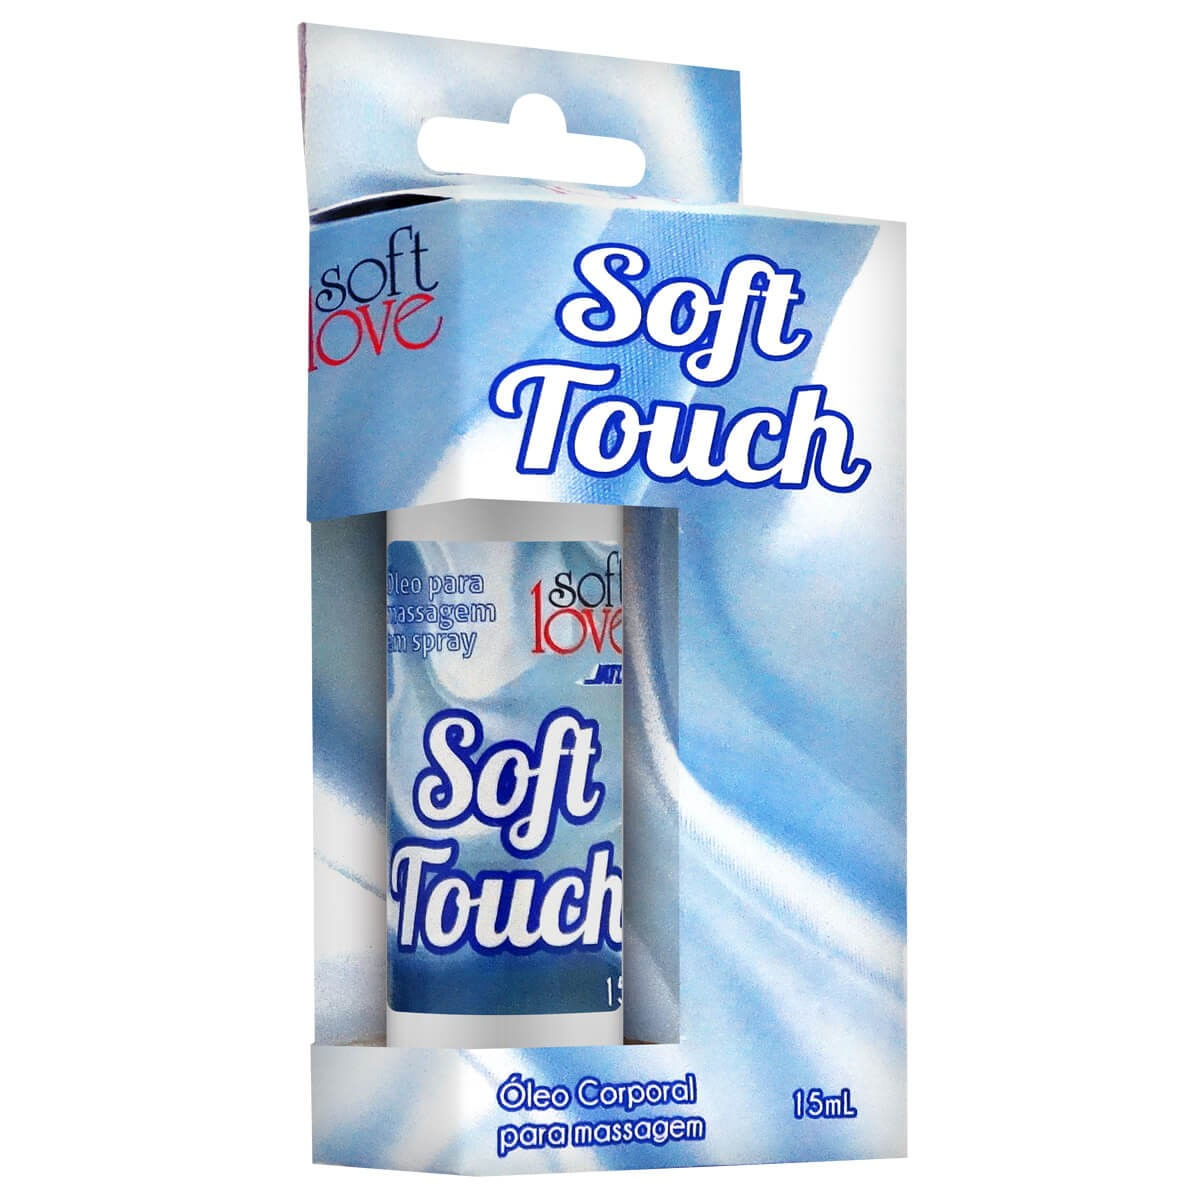 Gel para Massagem Corporal Soft Touch 15ml Soft Love